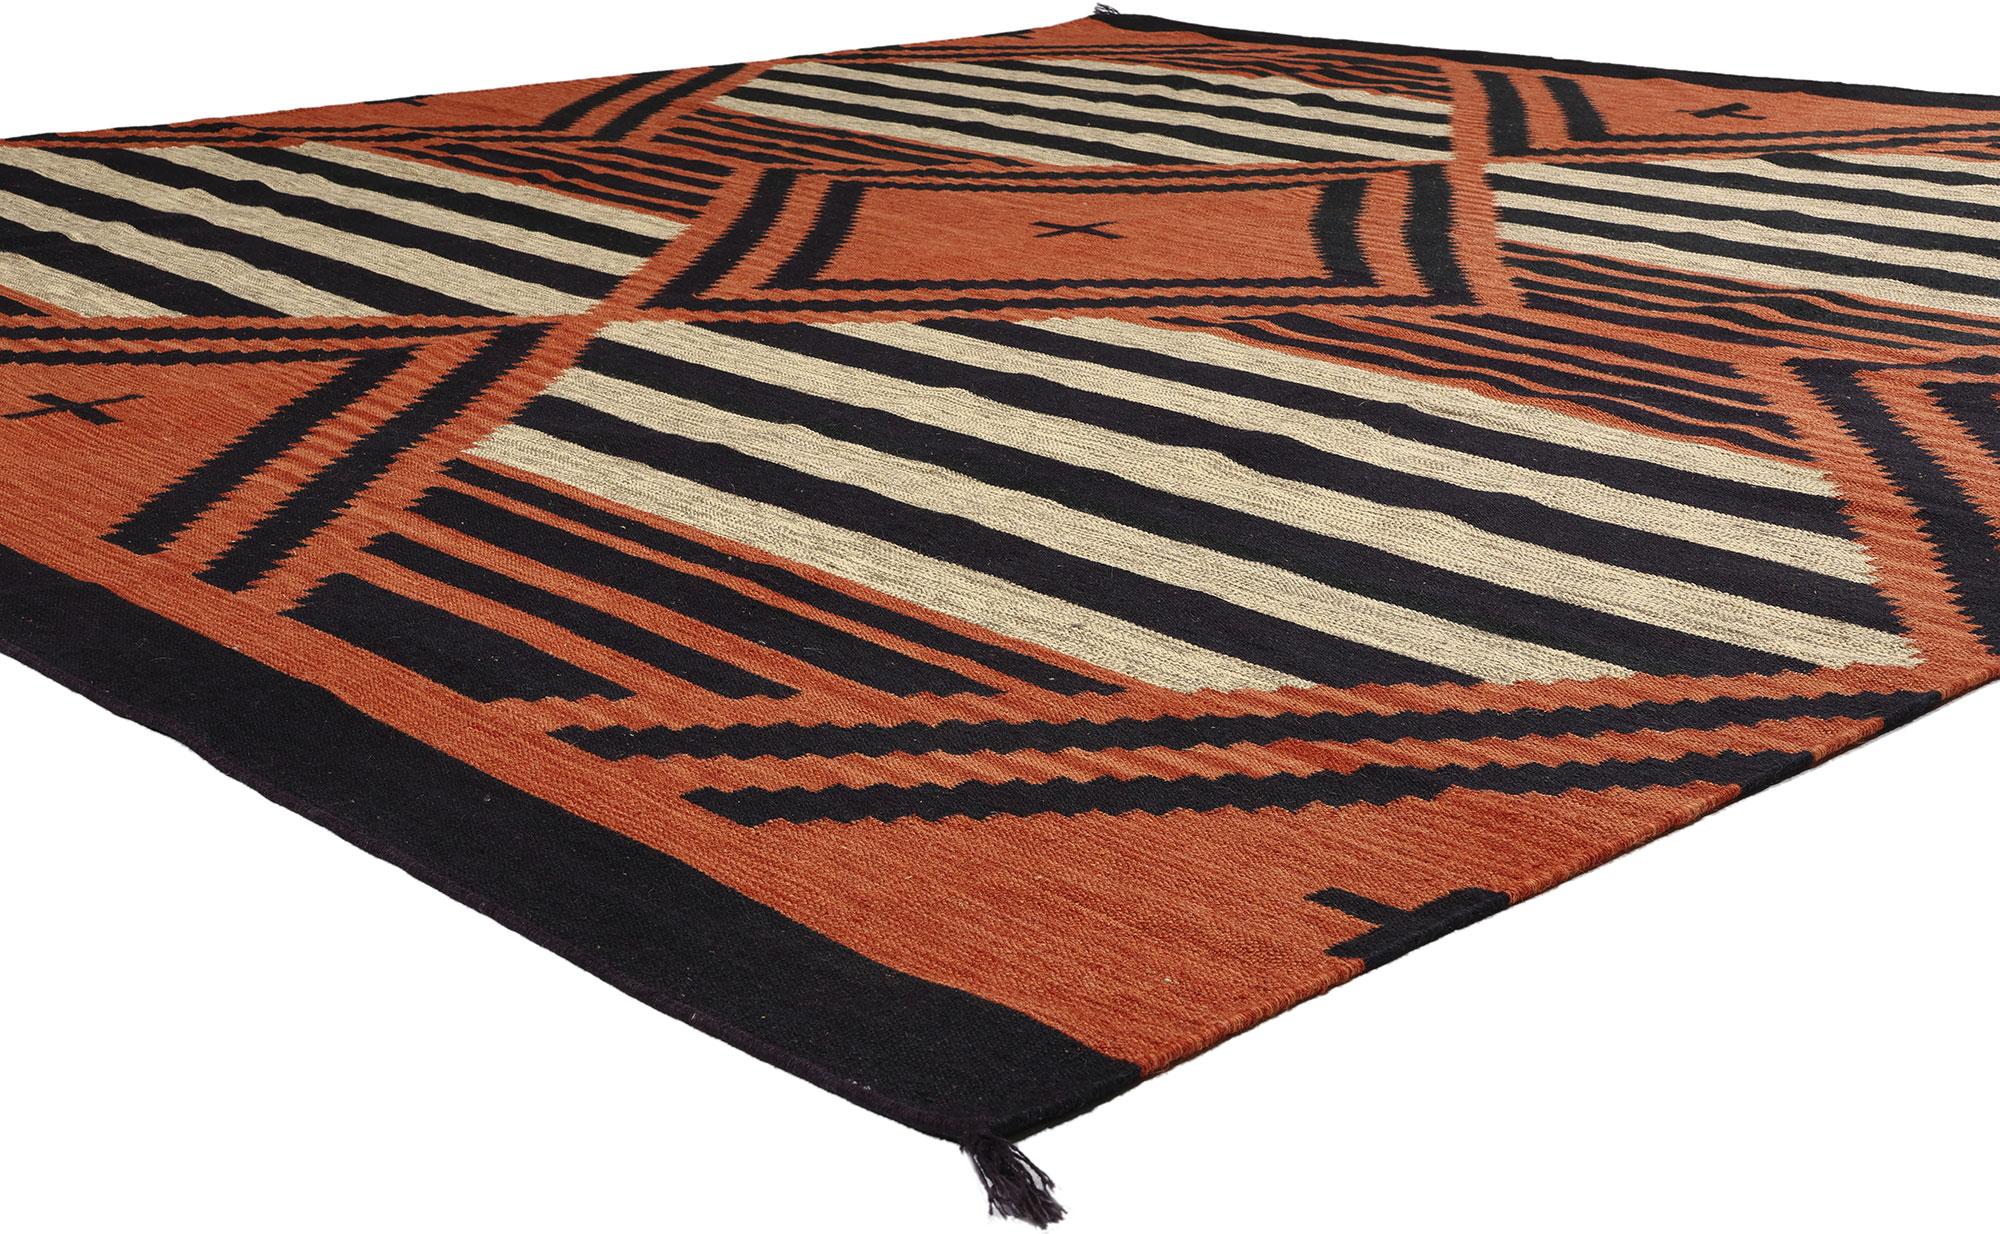 81042 Southwest Modern Chief Blanket Teppich im Navajo-Stil, 09'10 x 10'00. Begeben Sie sich mit diesem handgewebten Wollteppich Chief Blanket im Navajo-Stil auf eine bezaubernde Reise in die Wärme der Sonne. Dieser Kelimteppich aus dem Südwesten